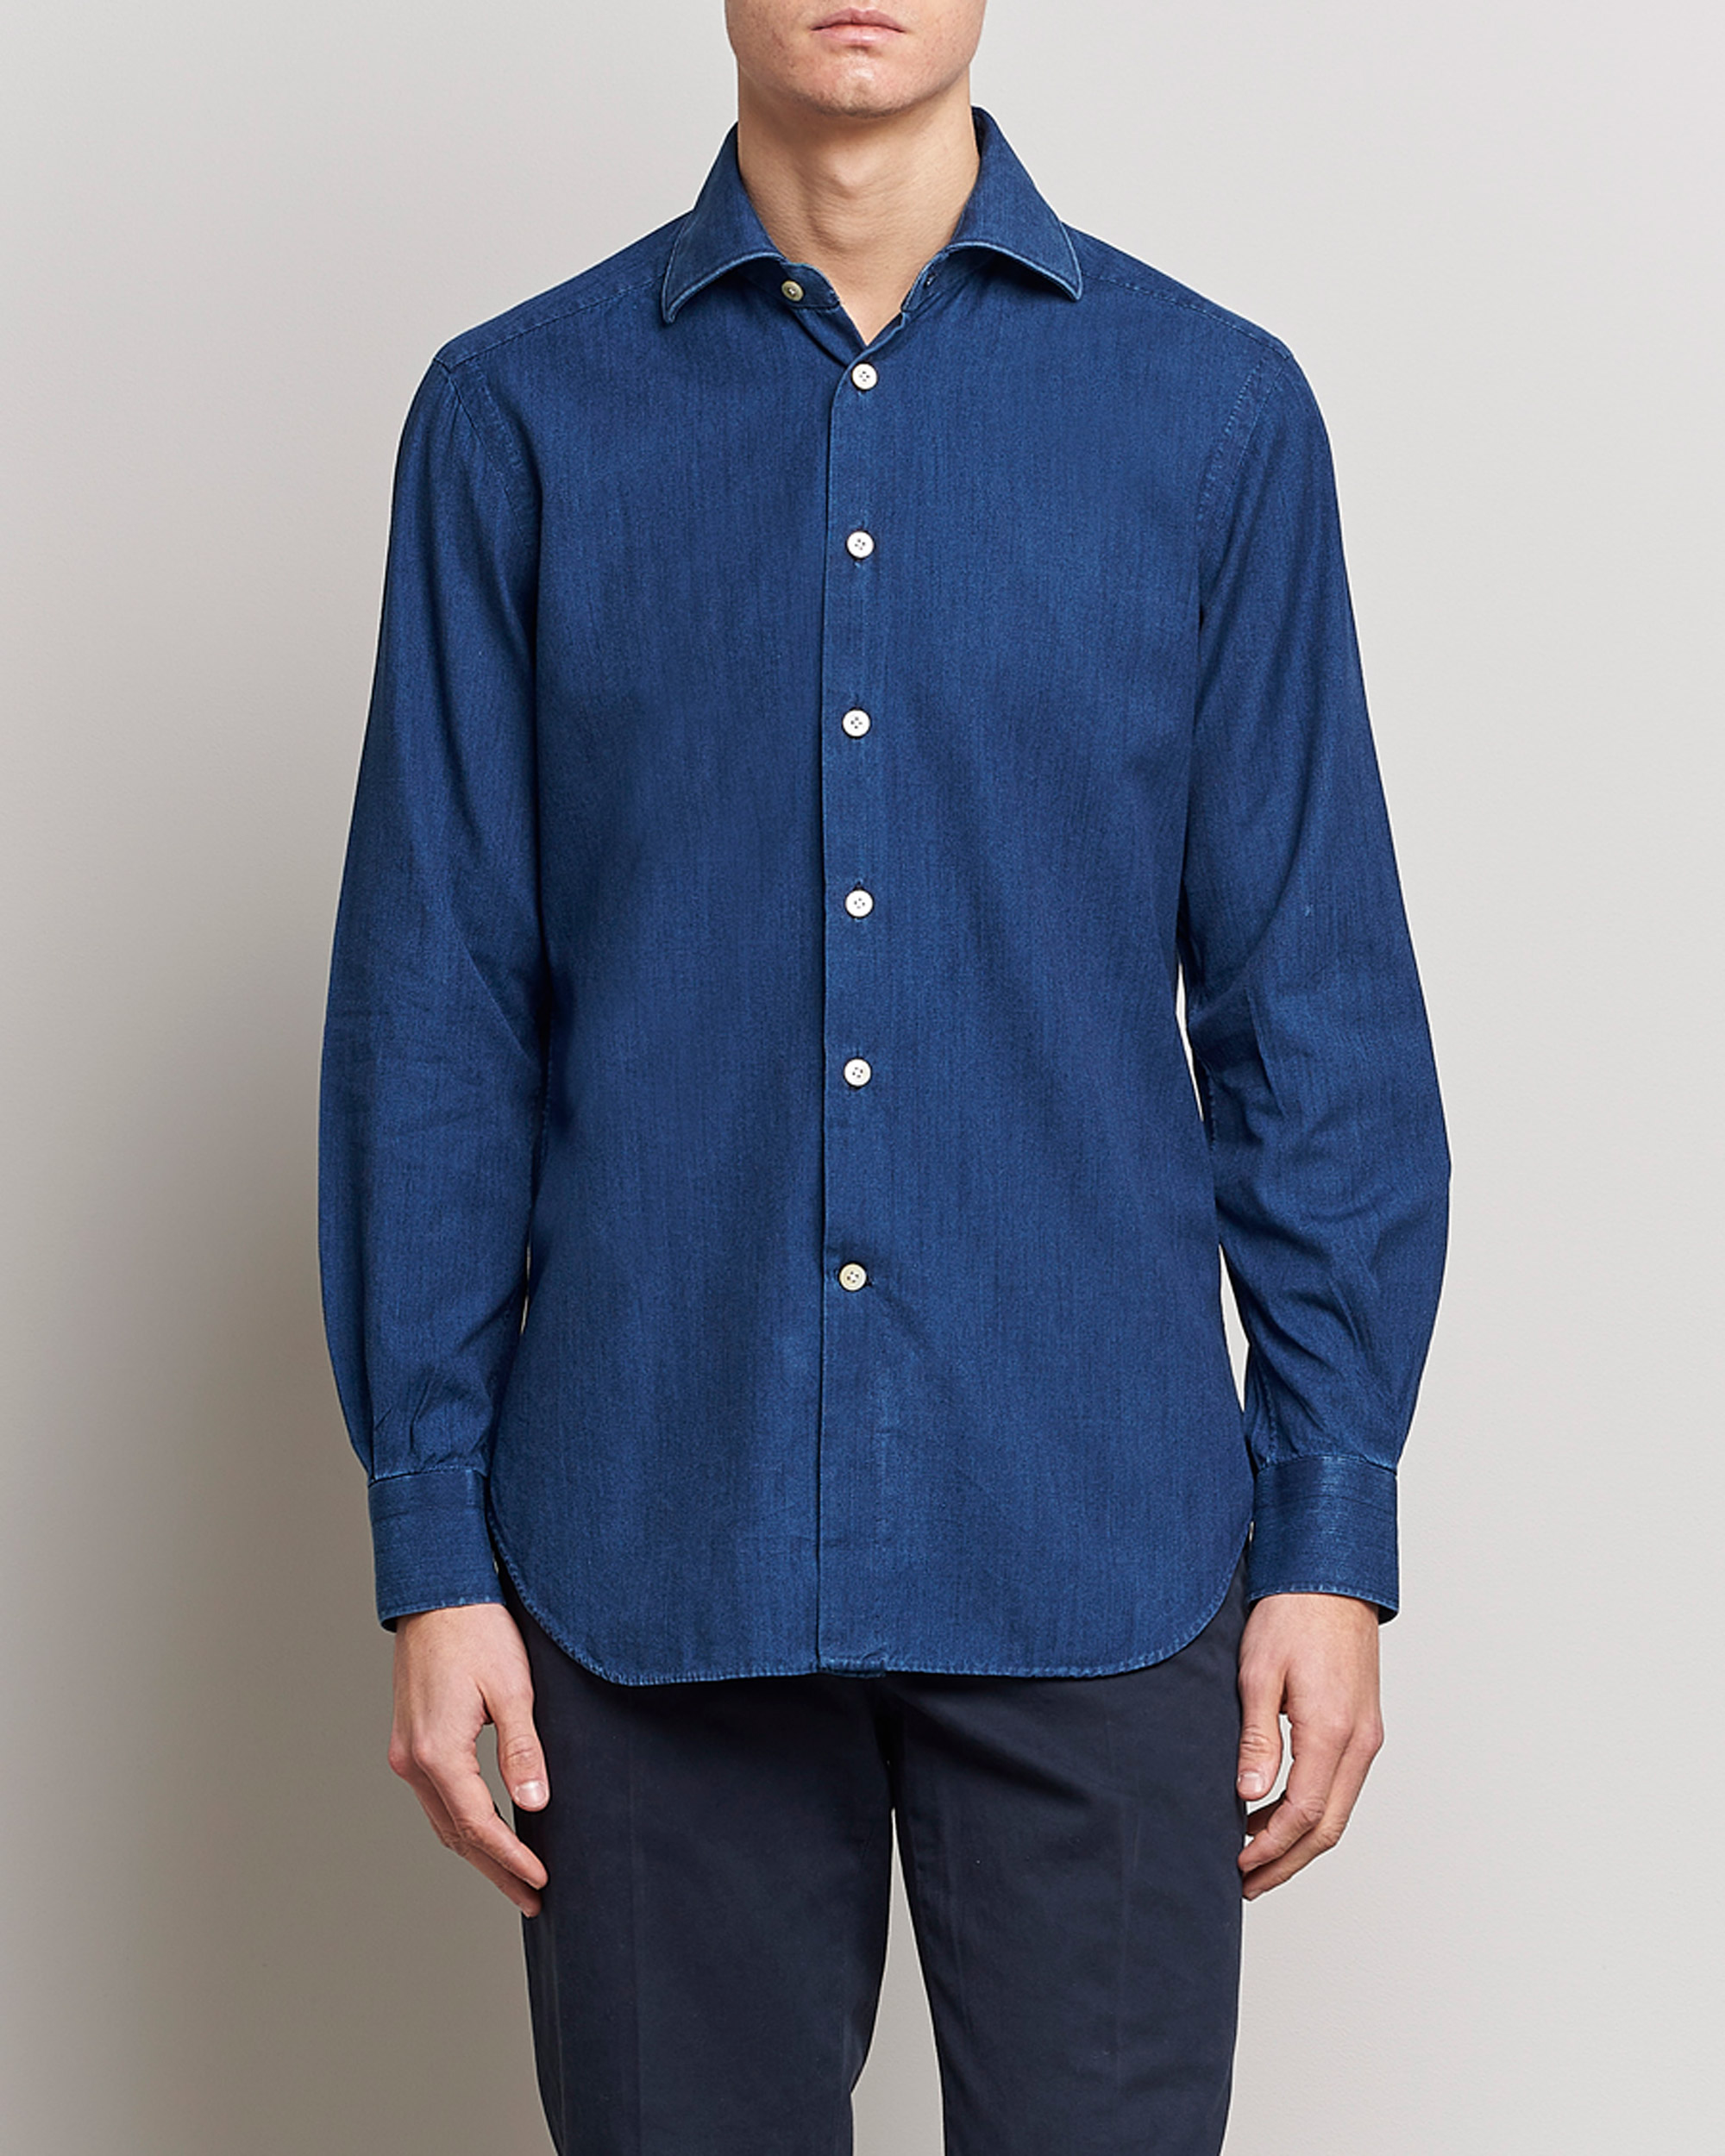 Herre | Kiton | Kiton | Denim Sport Shirt Indigo Blue